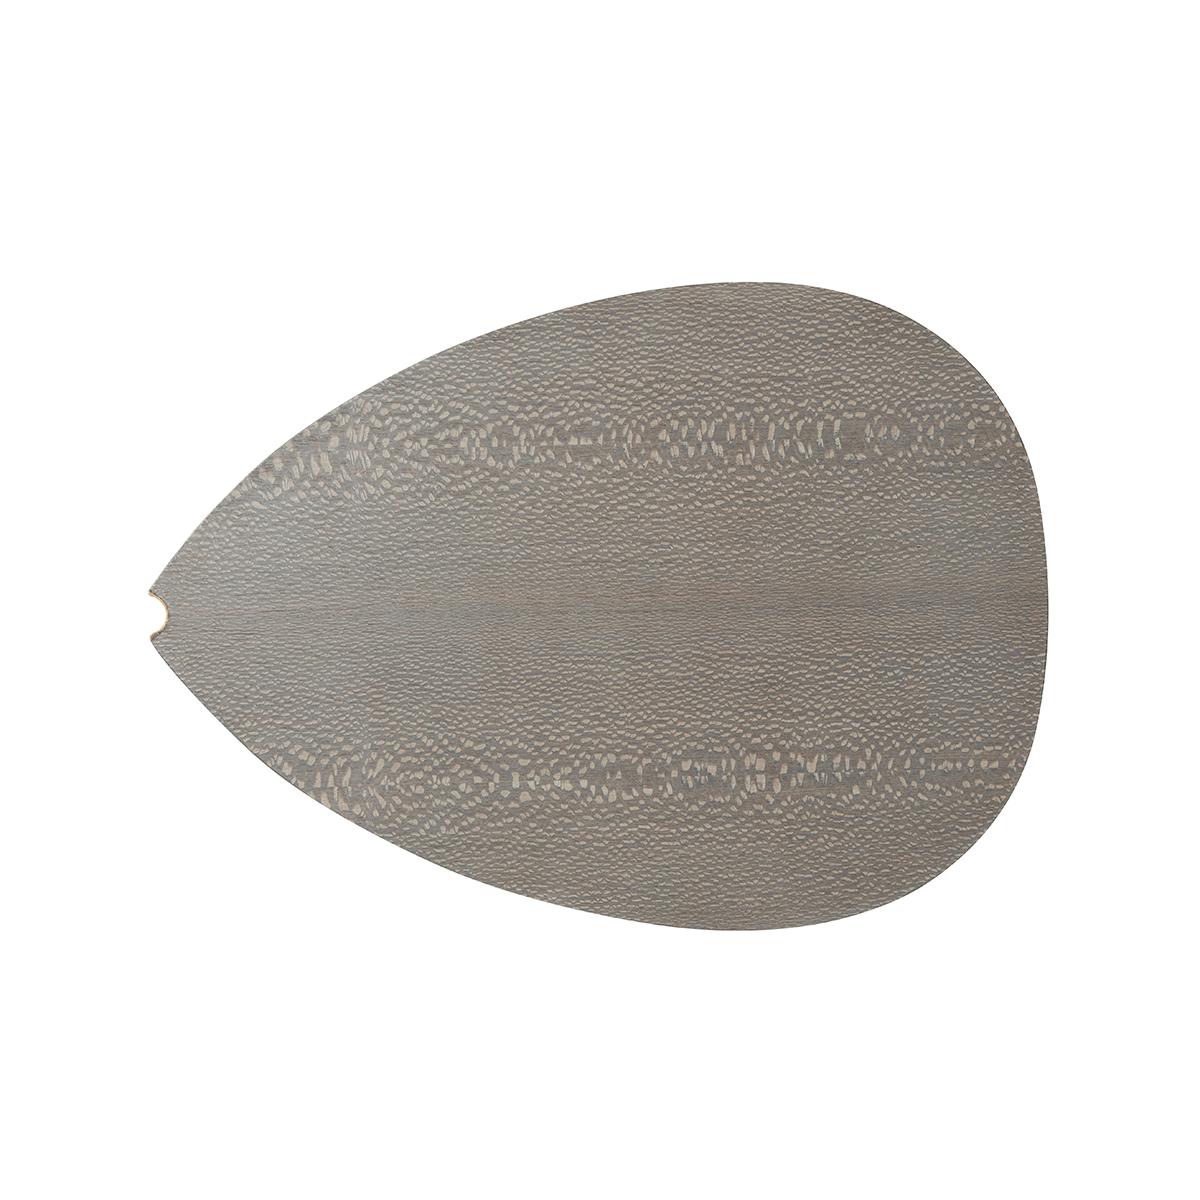 Table moderne en placage de bois laqué gris sur une base encastrée laquée crème. Le plateau et les côtés de la table sont ornés d'un plectre et un canal doré unique est découpé à l'une des extrémités.

Dimensions : 25